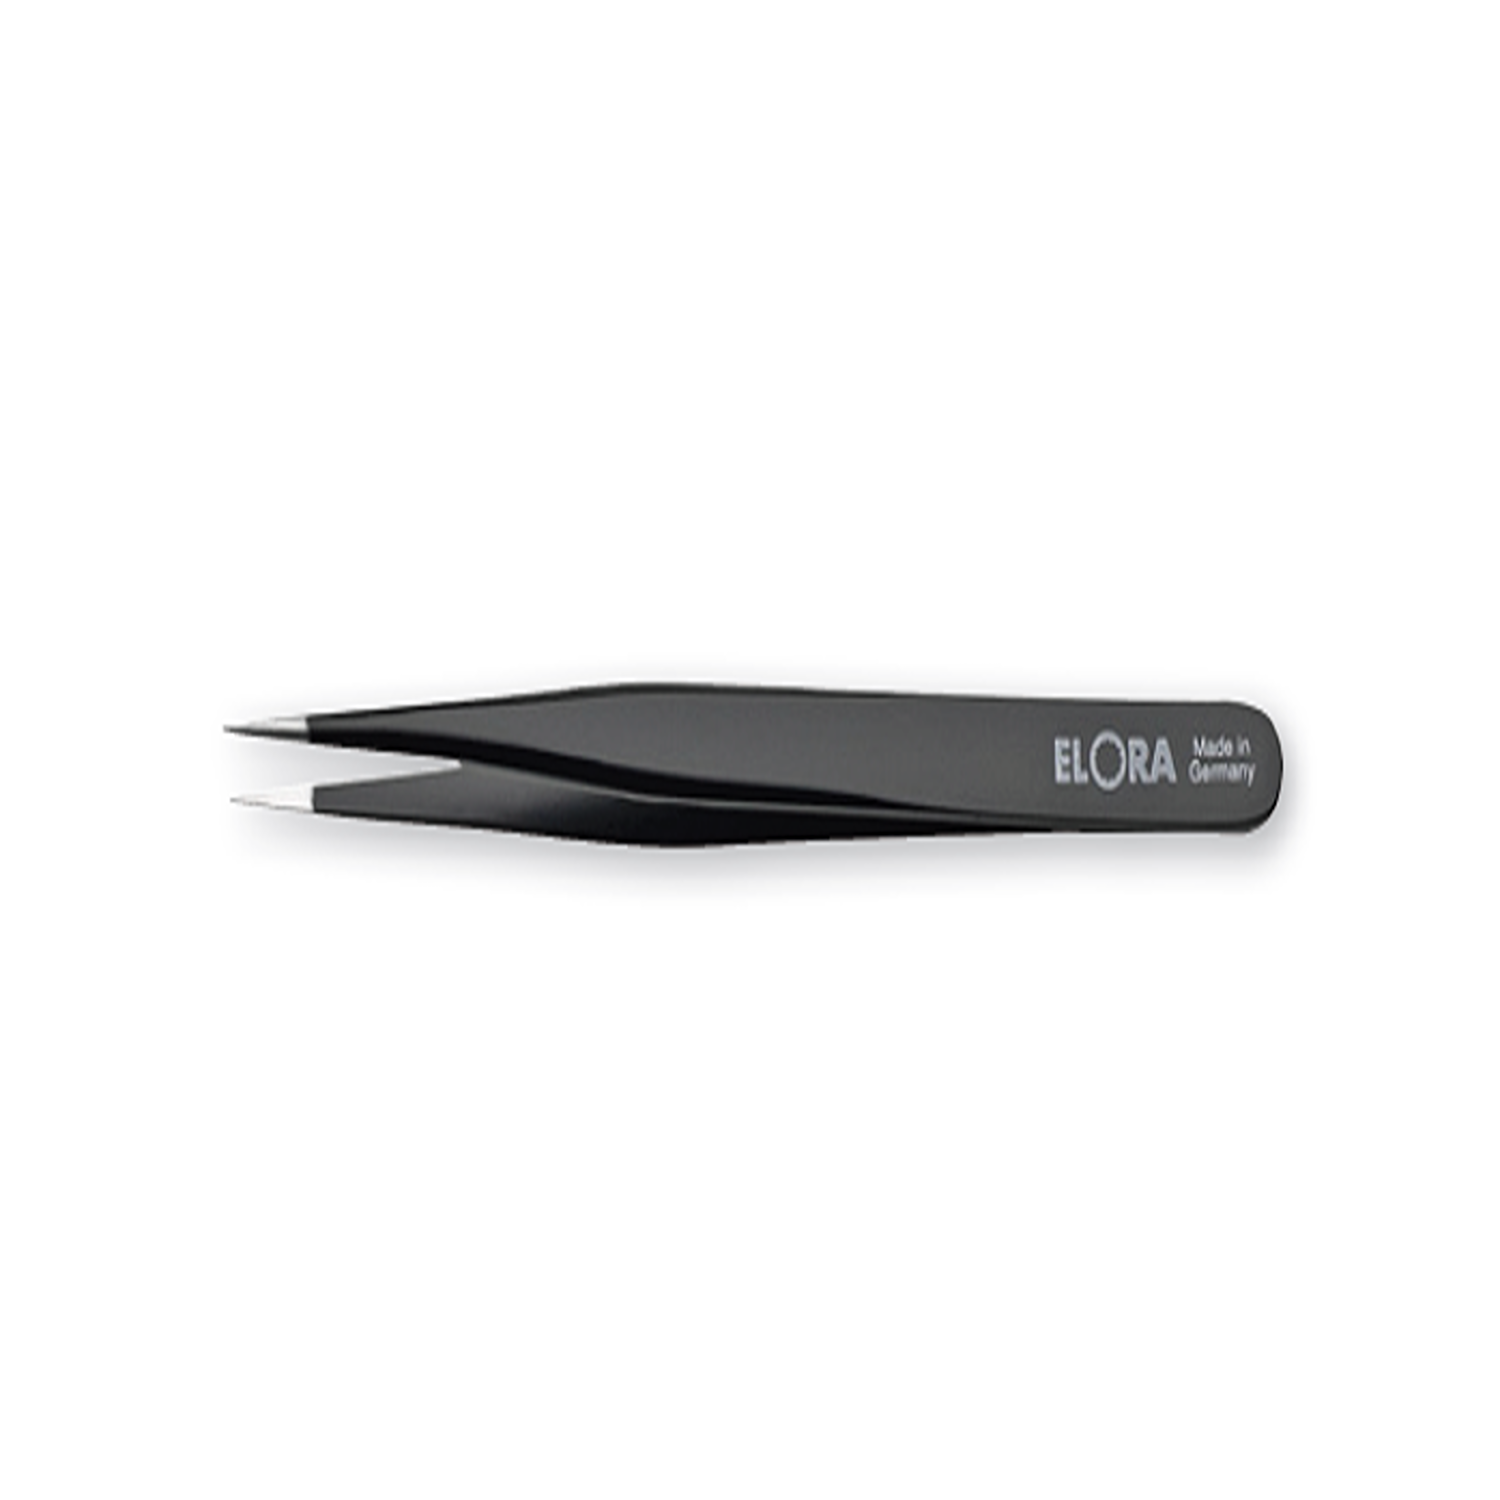 ELORA 5160-STE Electronic Tweezers ESD (ELORA Tools) - Premium Tweezers from ELORA - Shop now at Yew Aik.